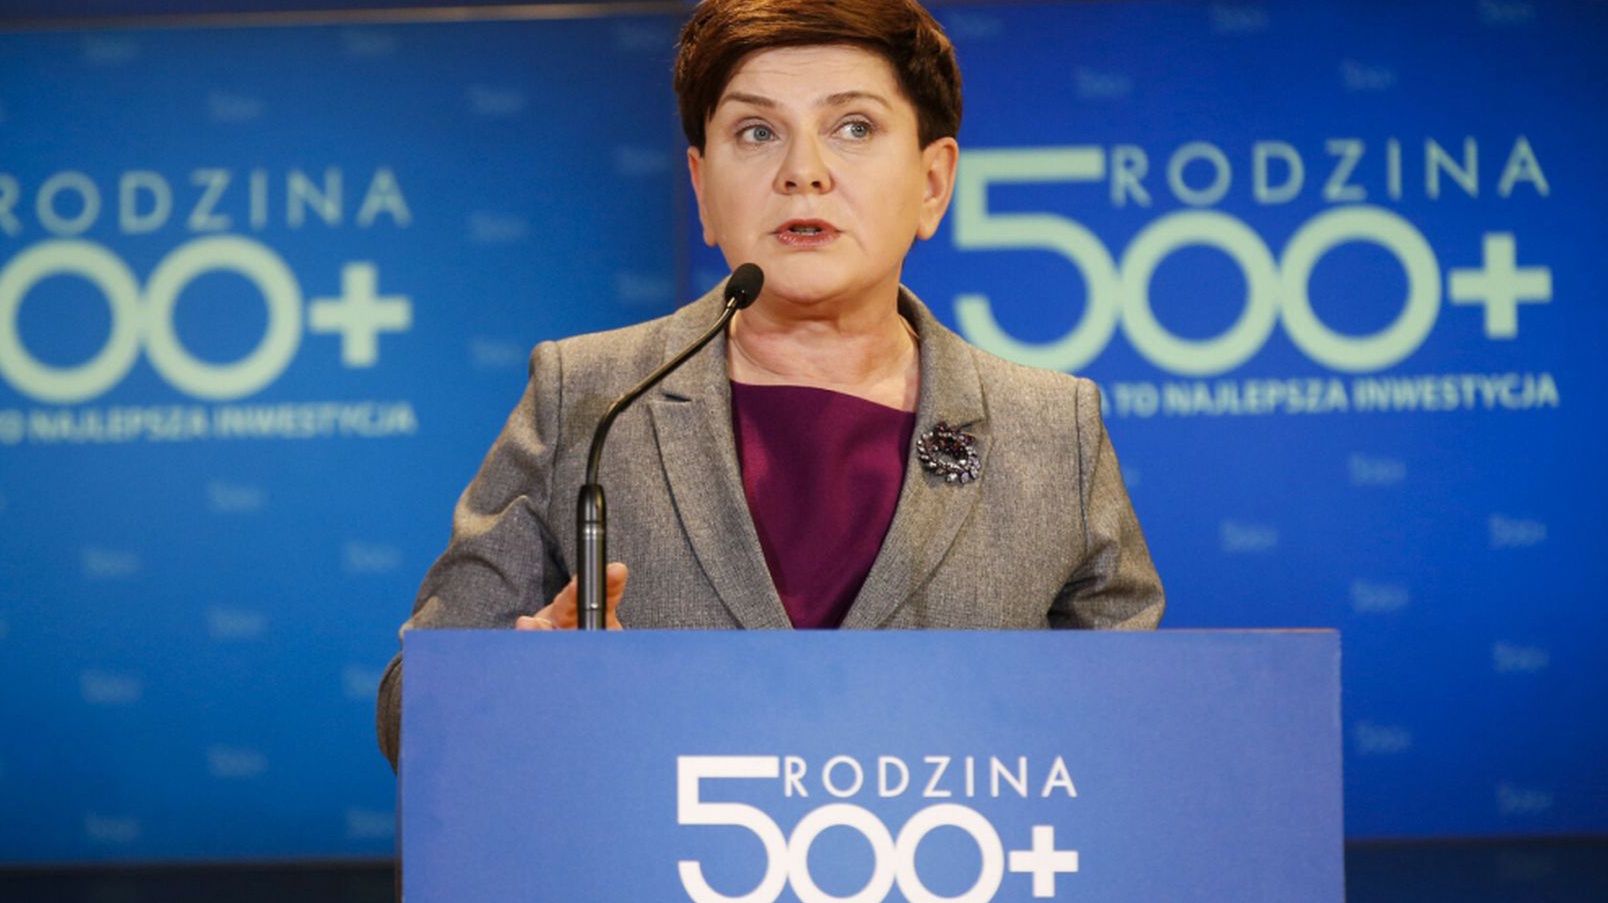 Była premier Beata Szydło